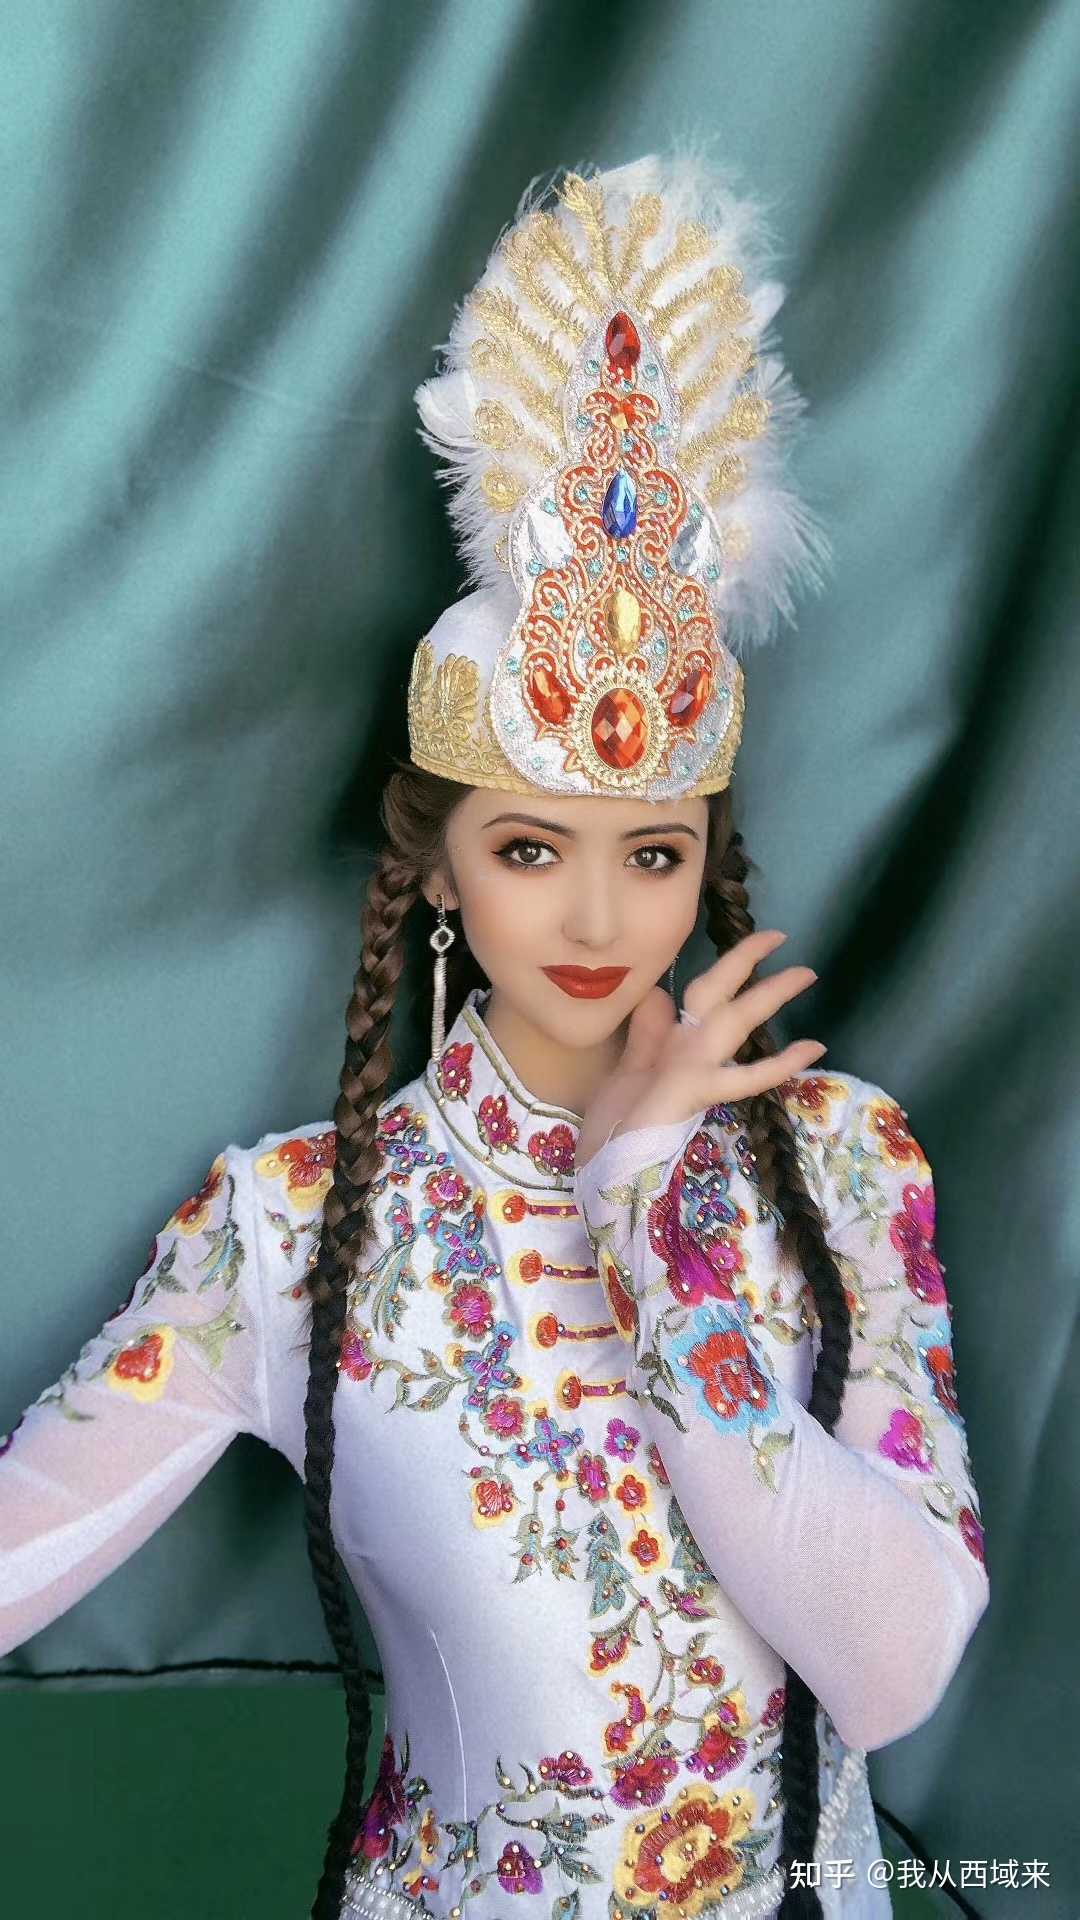 朋友圈一组新疆姑娘演出照分享给大噶有网友说这就是维护国家统一的内